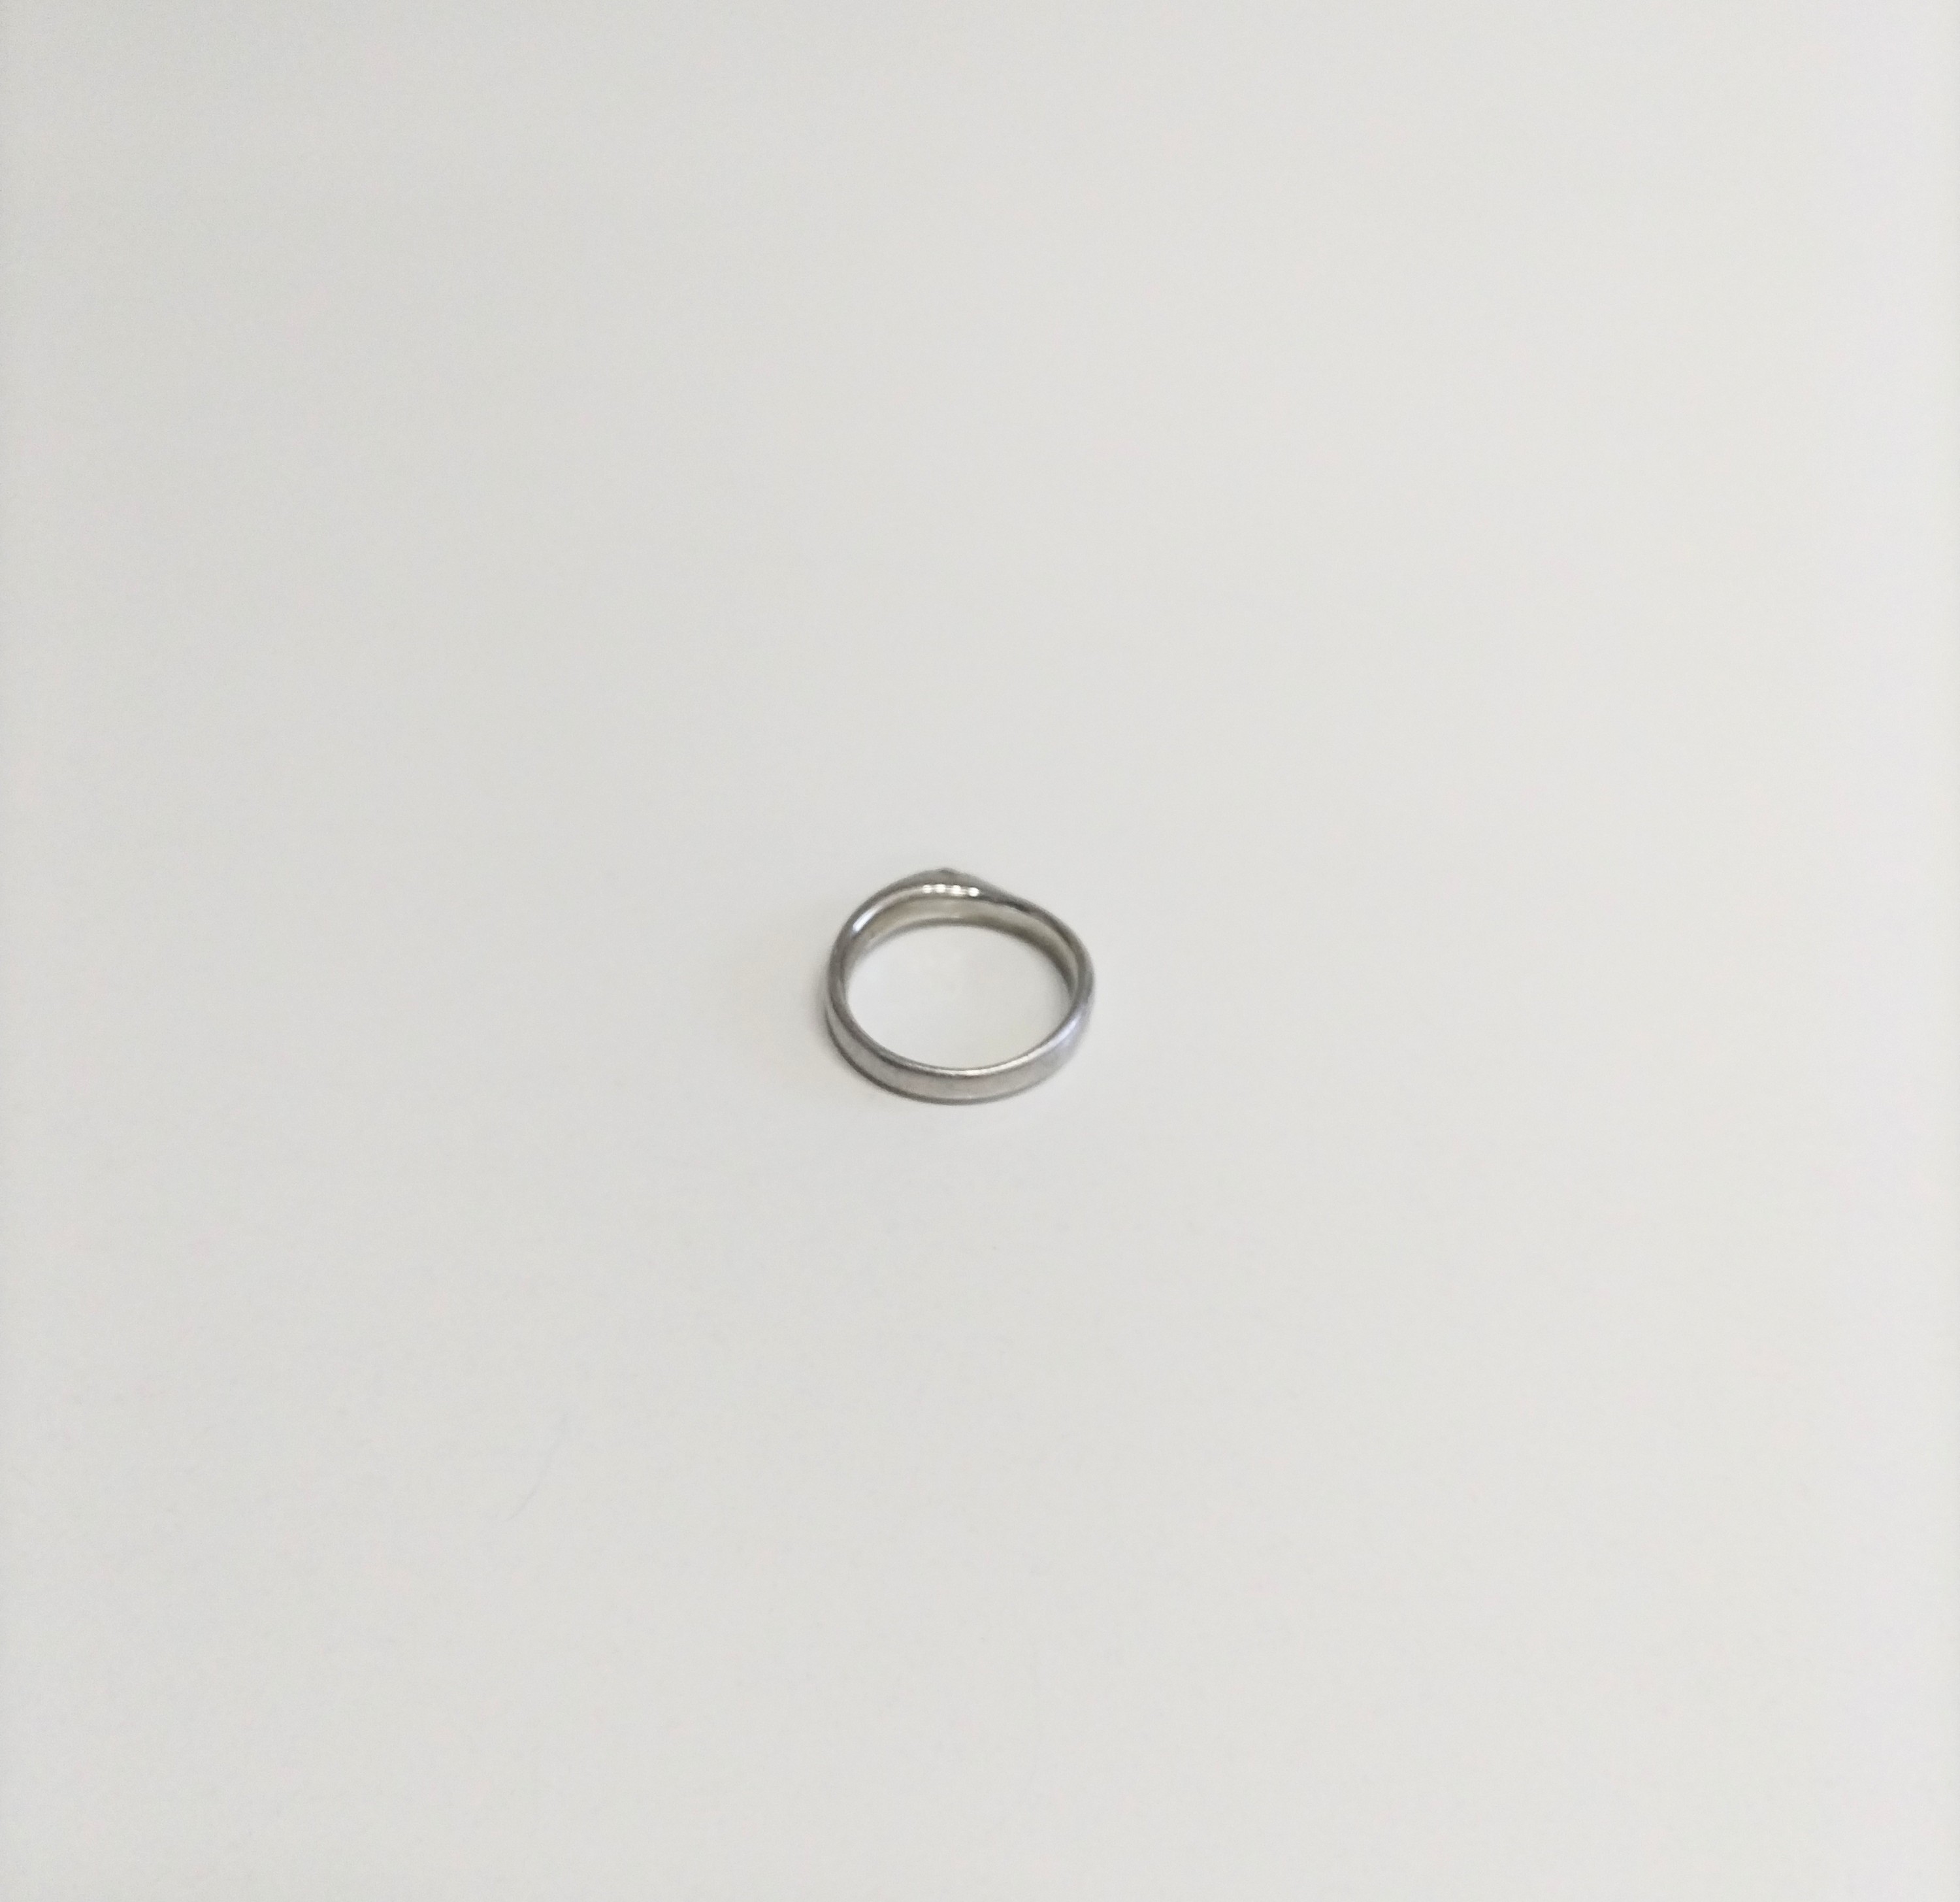 プラチナ 1000 指輪 6.0g | まるあ質店 愛媛県今治市の女性に優しい質屋